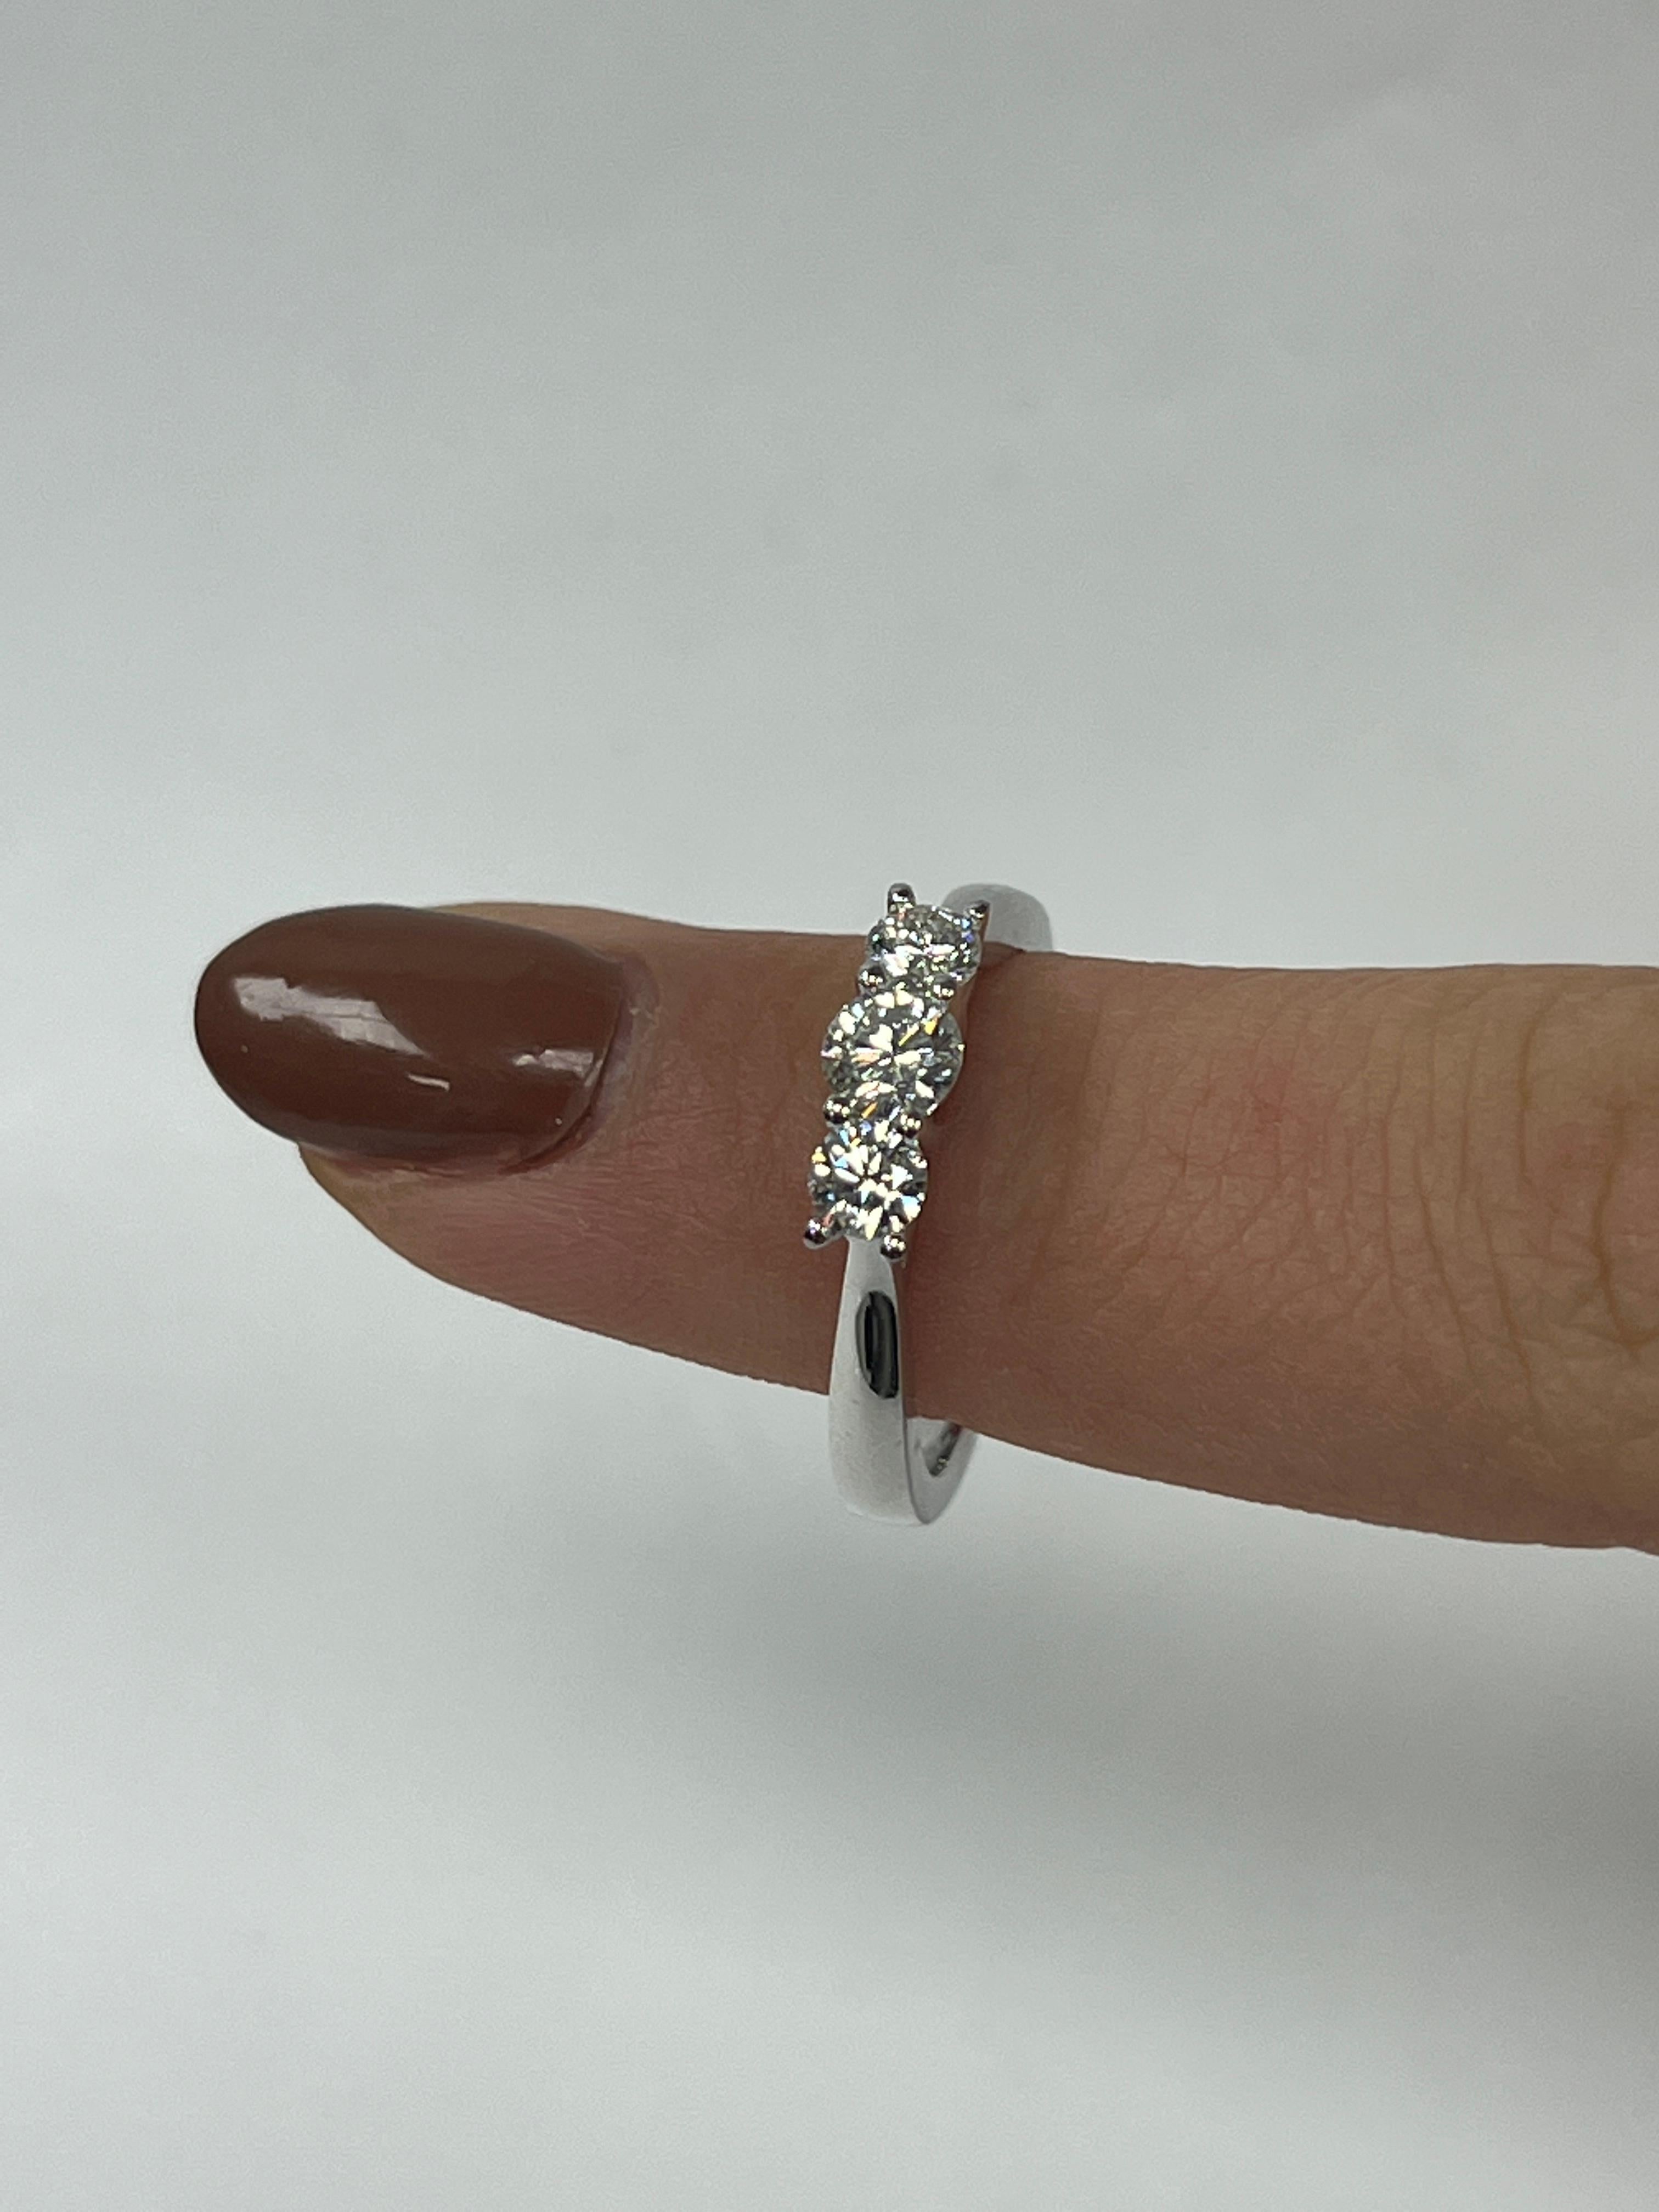 Brilliant Cut Three Stone Diamond Ring For Sale